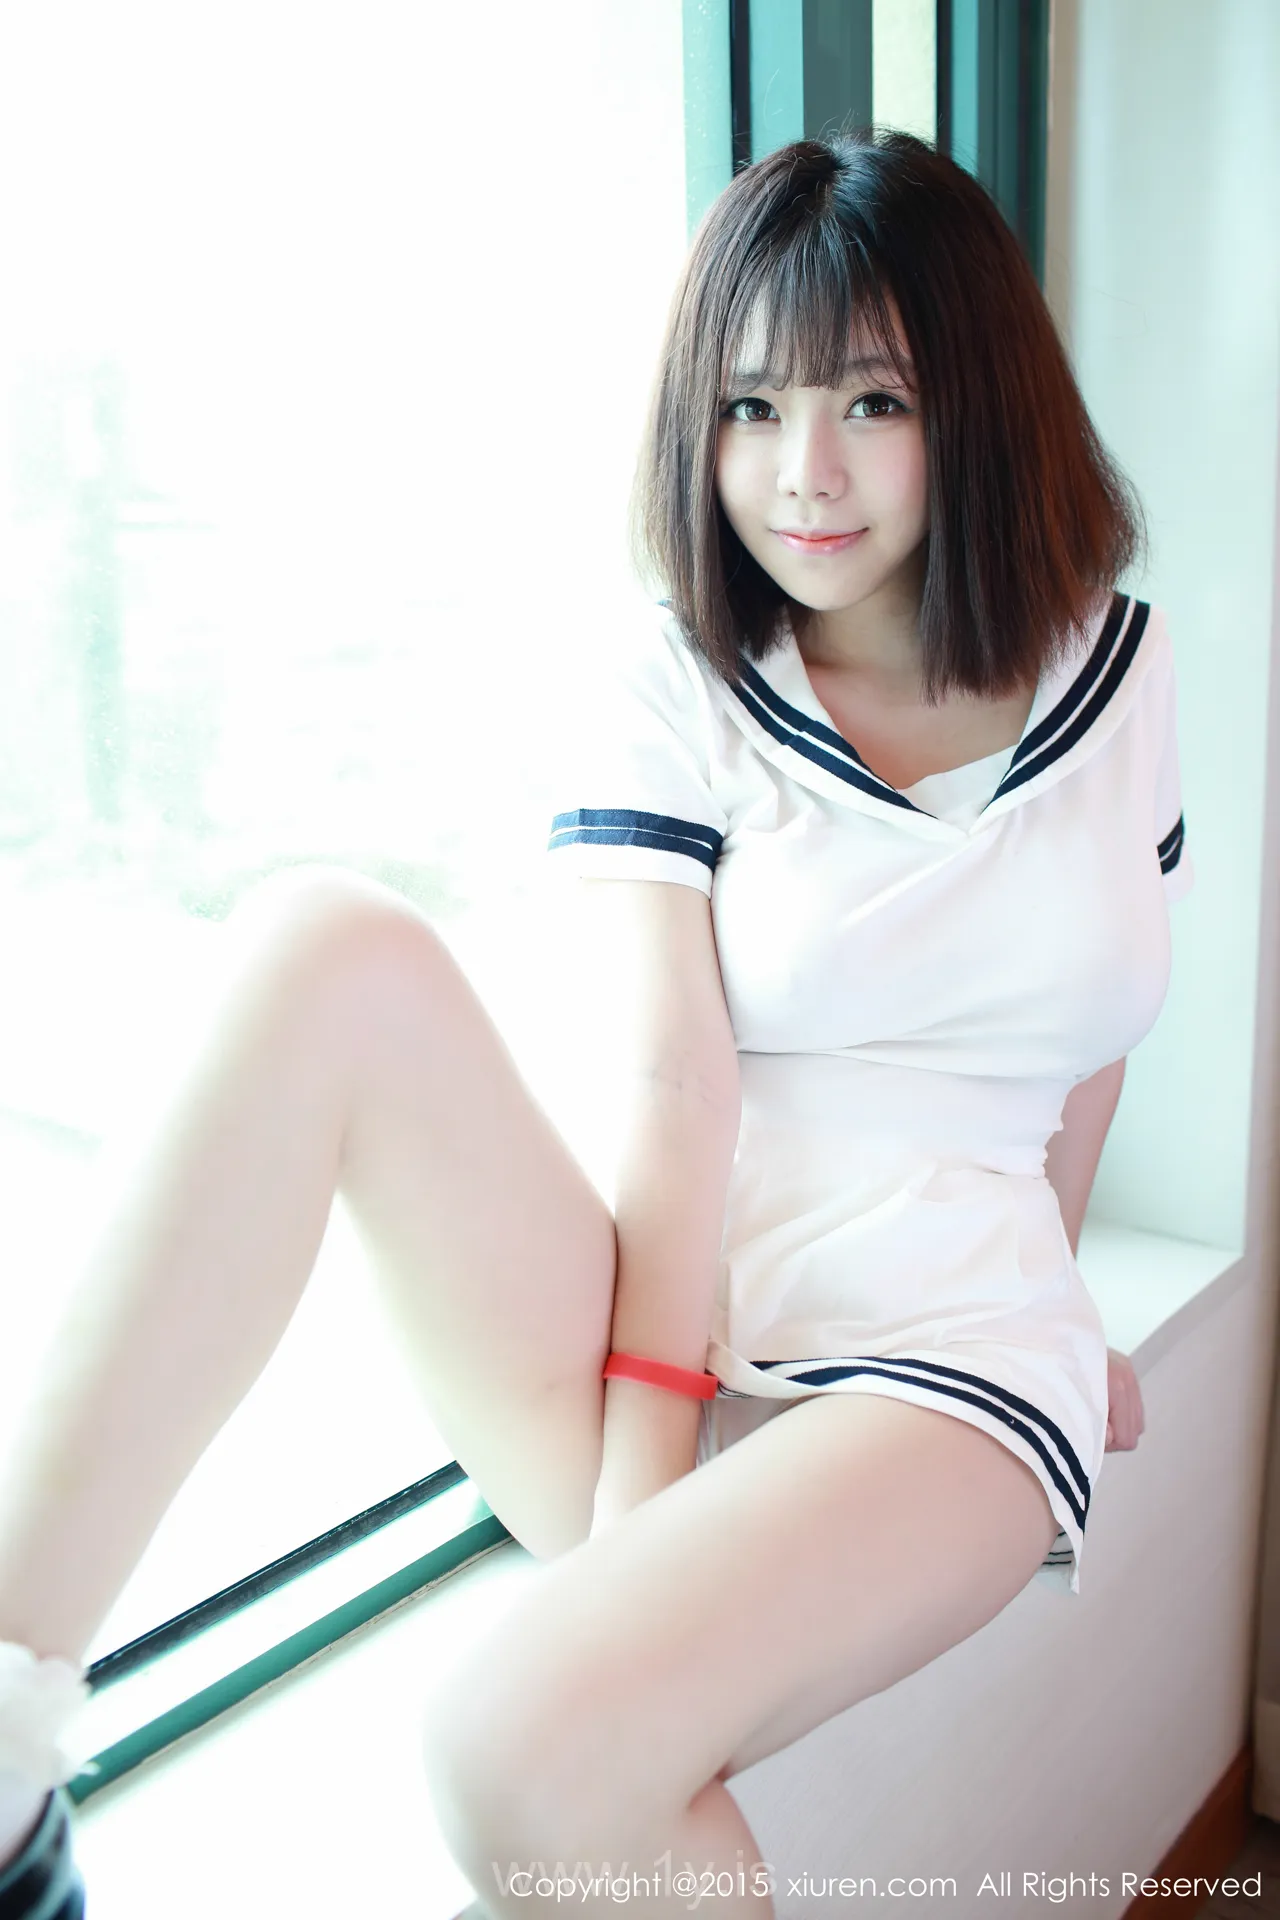 XIUREN(秀人网) NO.390 Stylish & Appealing Chinese Beauty 刘飞儿Faye